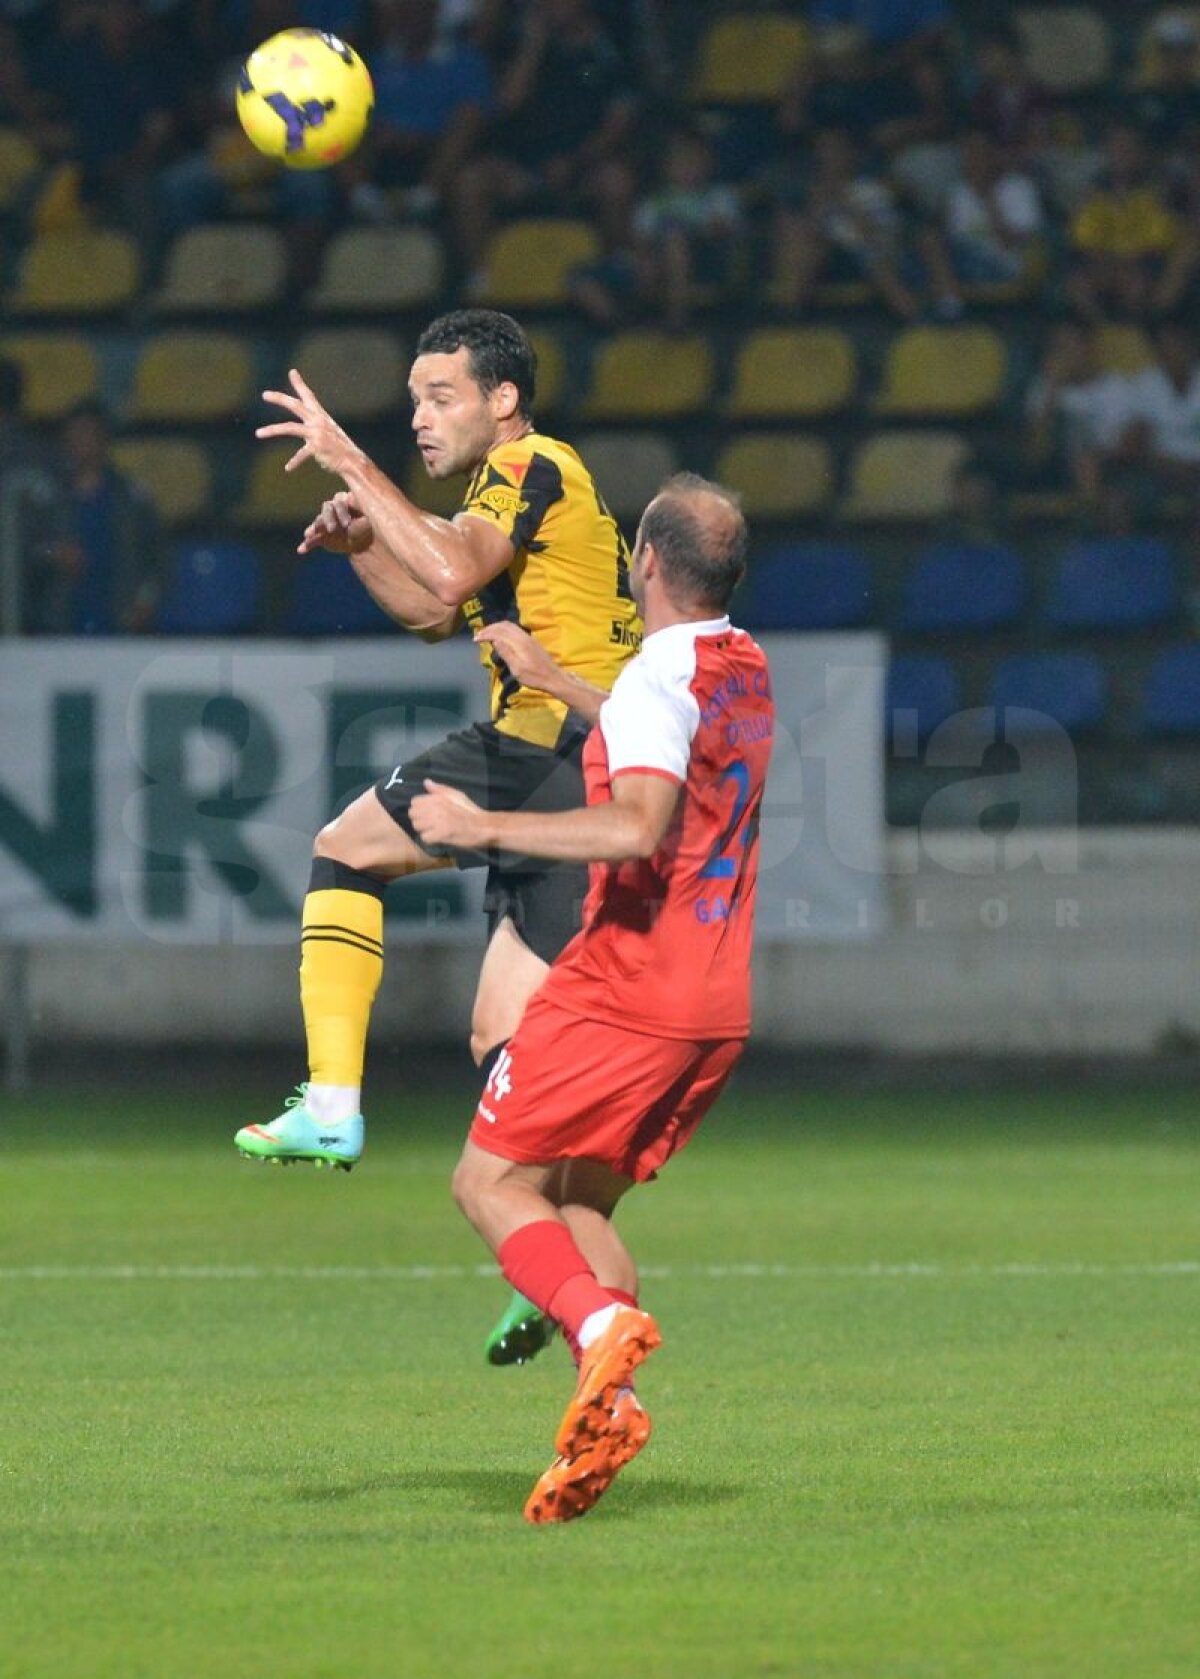 Galerie FOTO şi VIDEO » FC Braşov şi Oţelul Galaţi şi-au împărţit punctele după rezultatul de 1-1